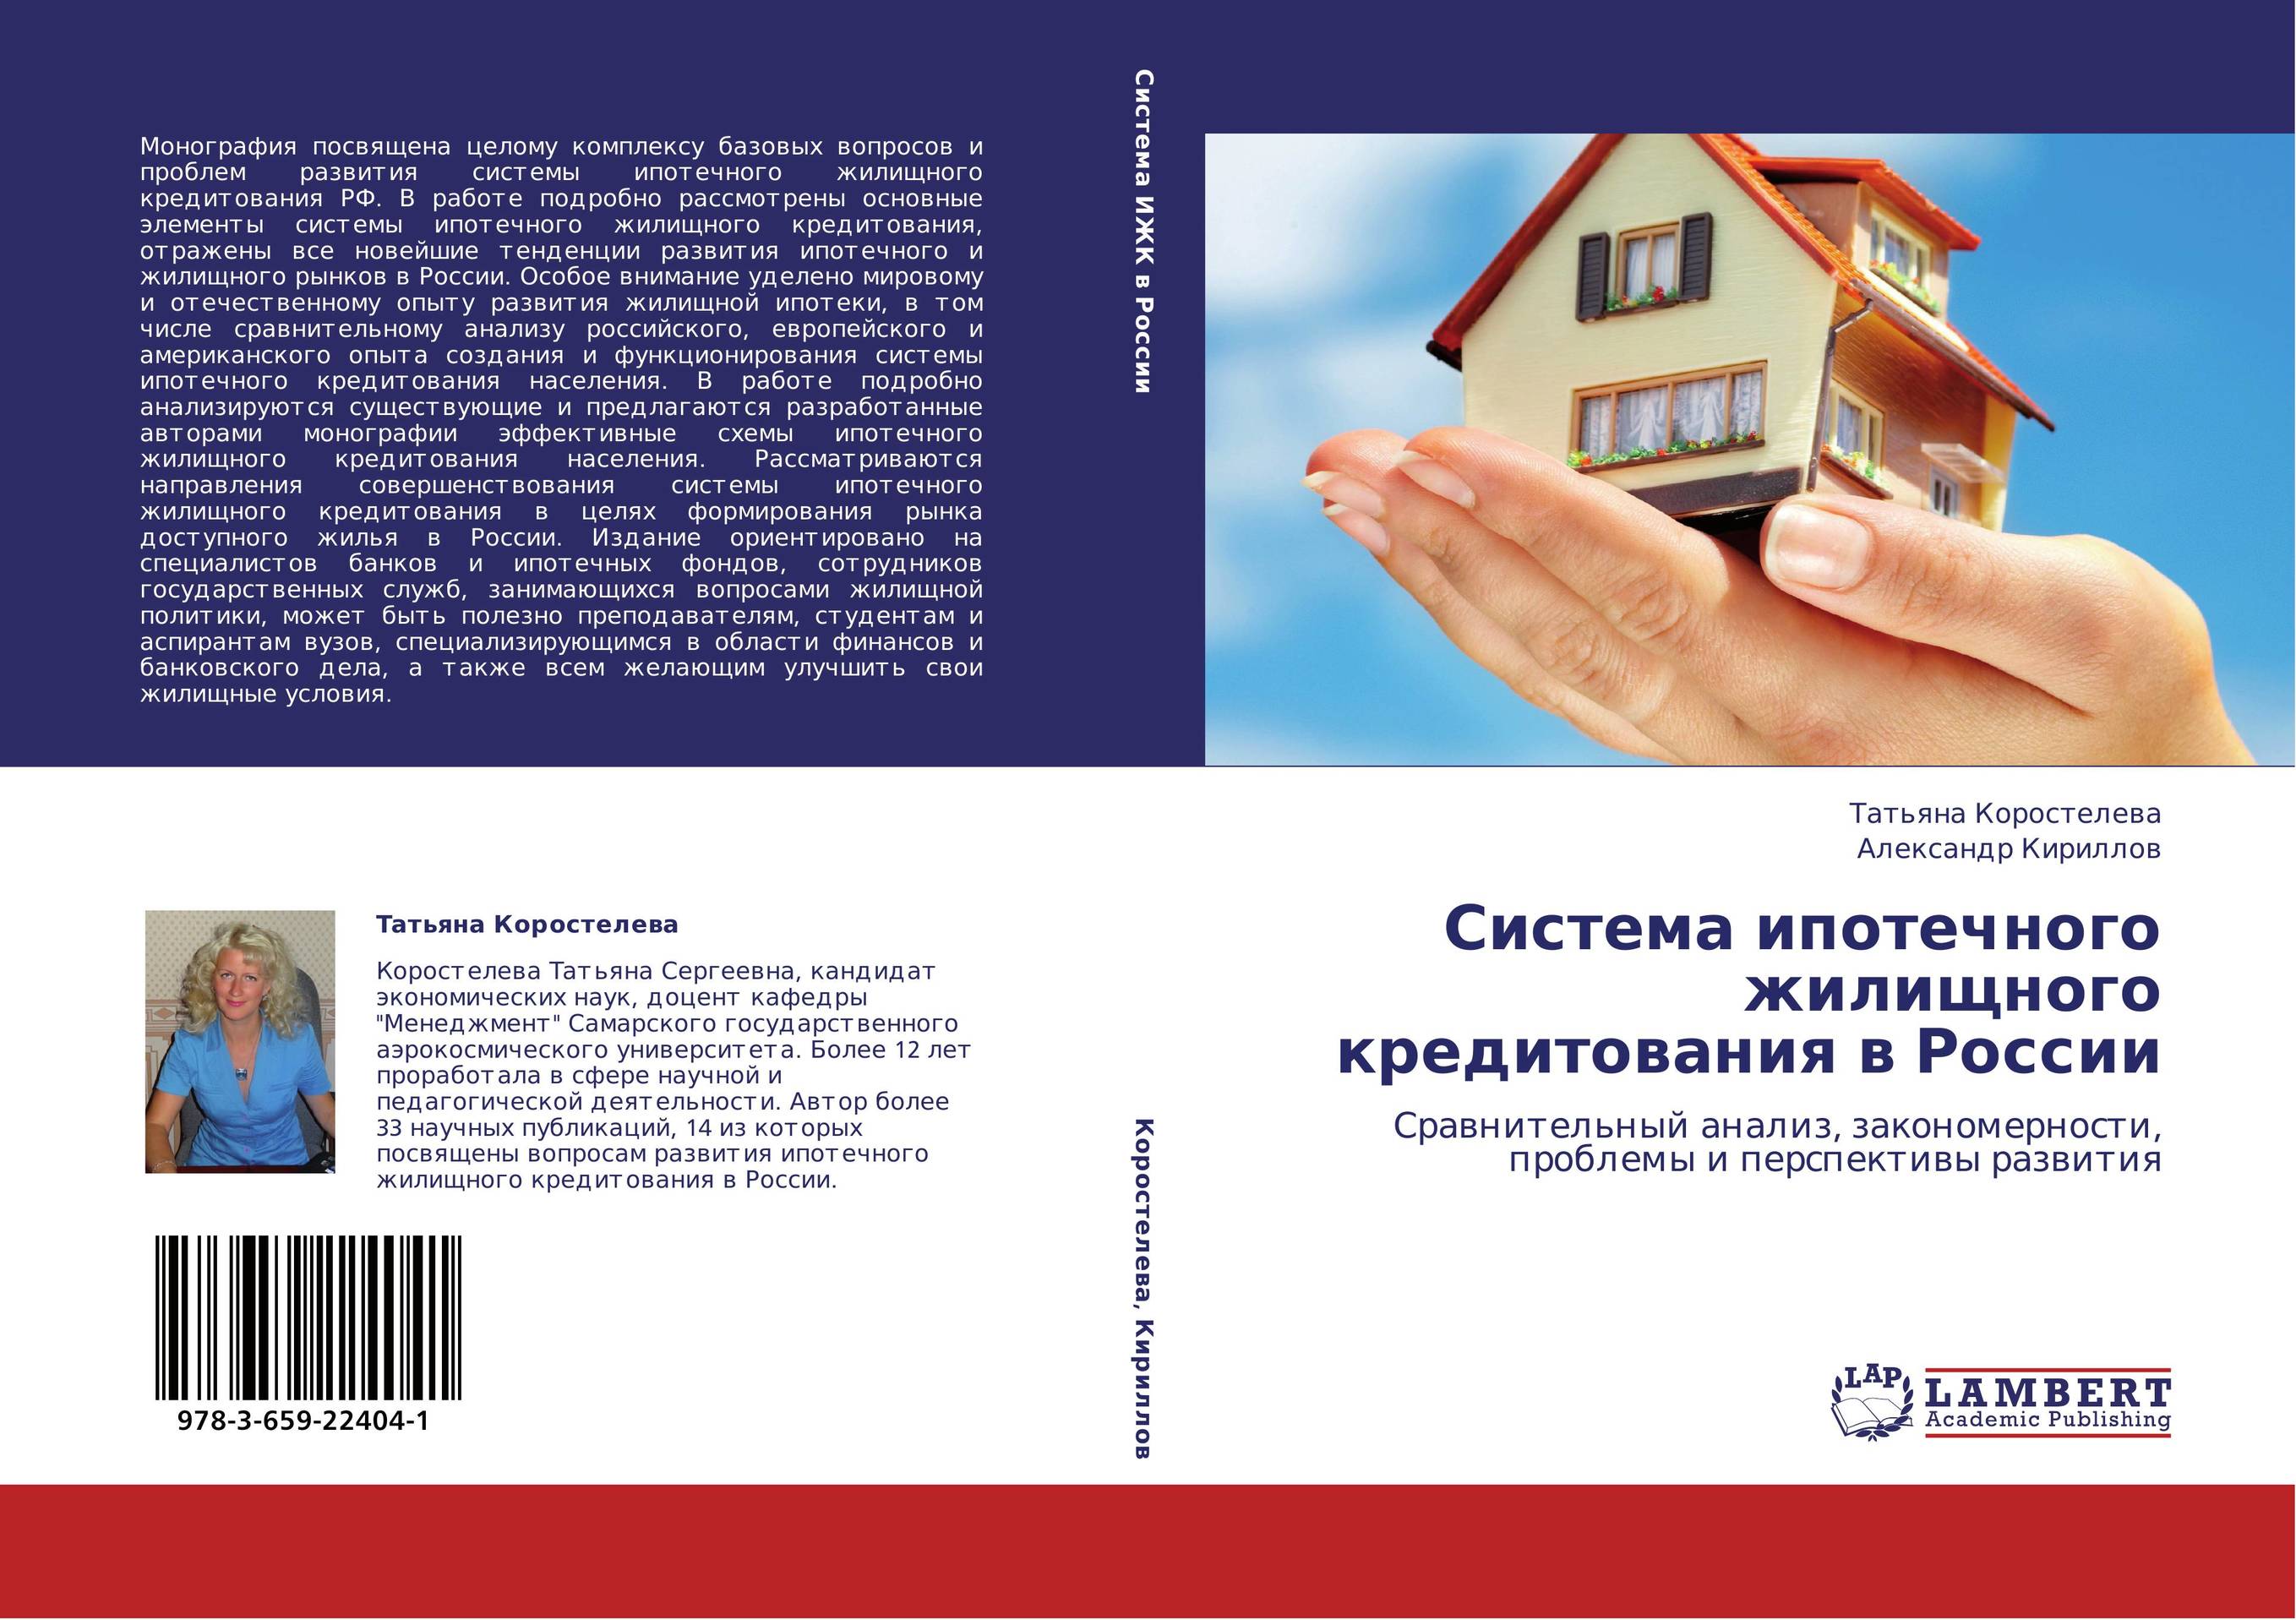 Система ипотечного жилищного кредитования в России. Сравнительный анализ, закономерности, проблемы и перспективы развития.